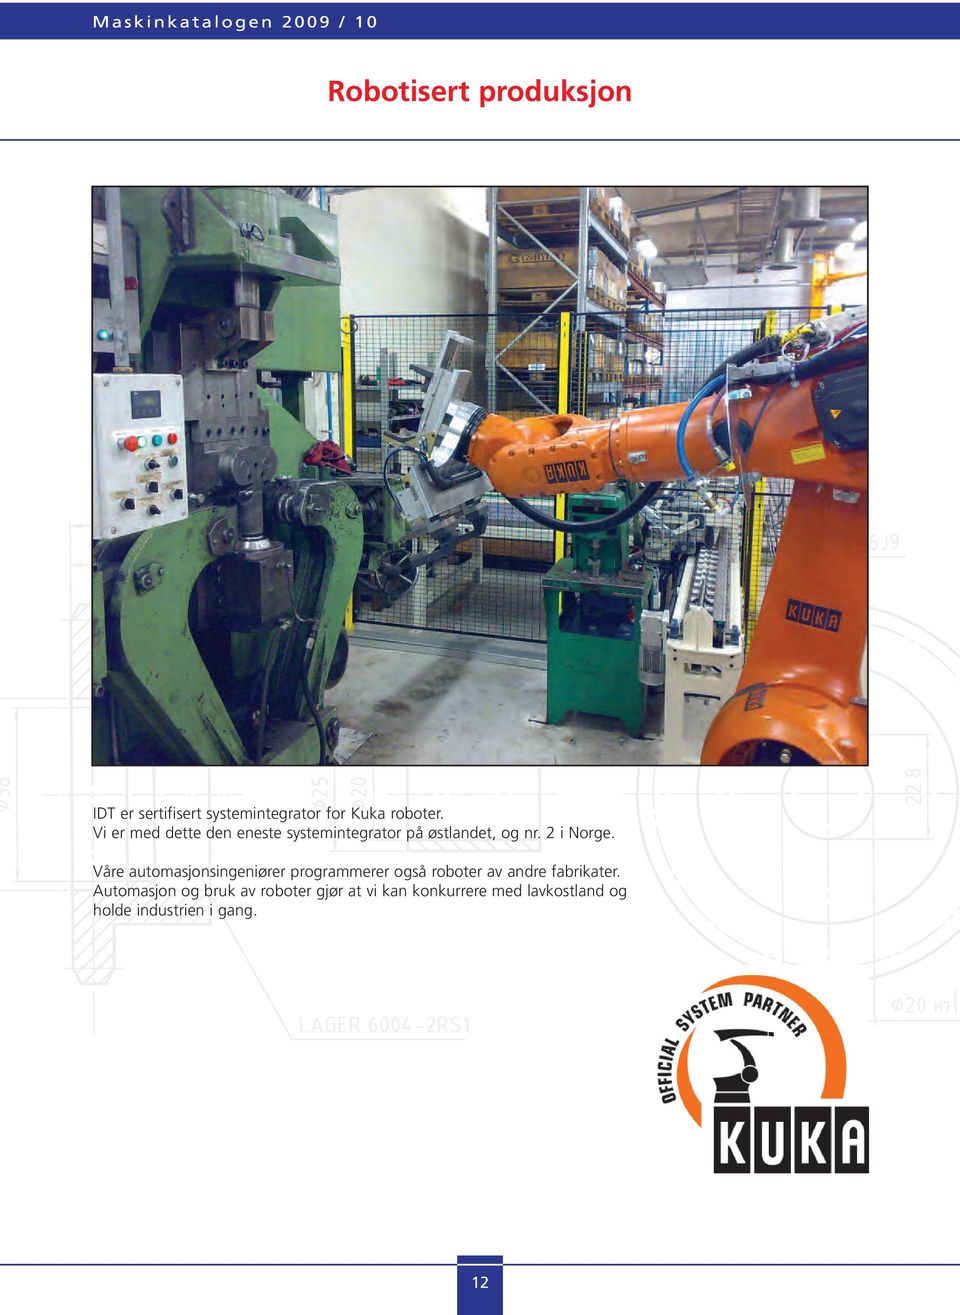 Våre automasjonsingeniører programmerer også roboter av andre fabrikater.